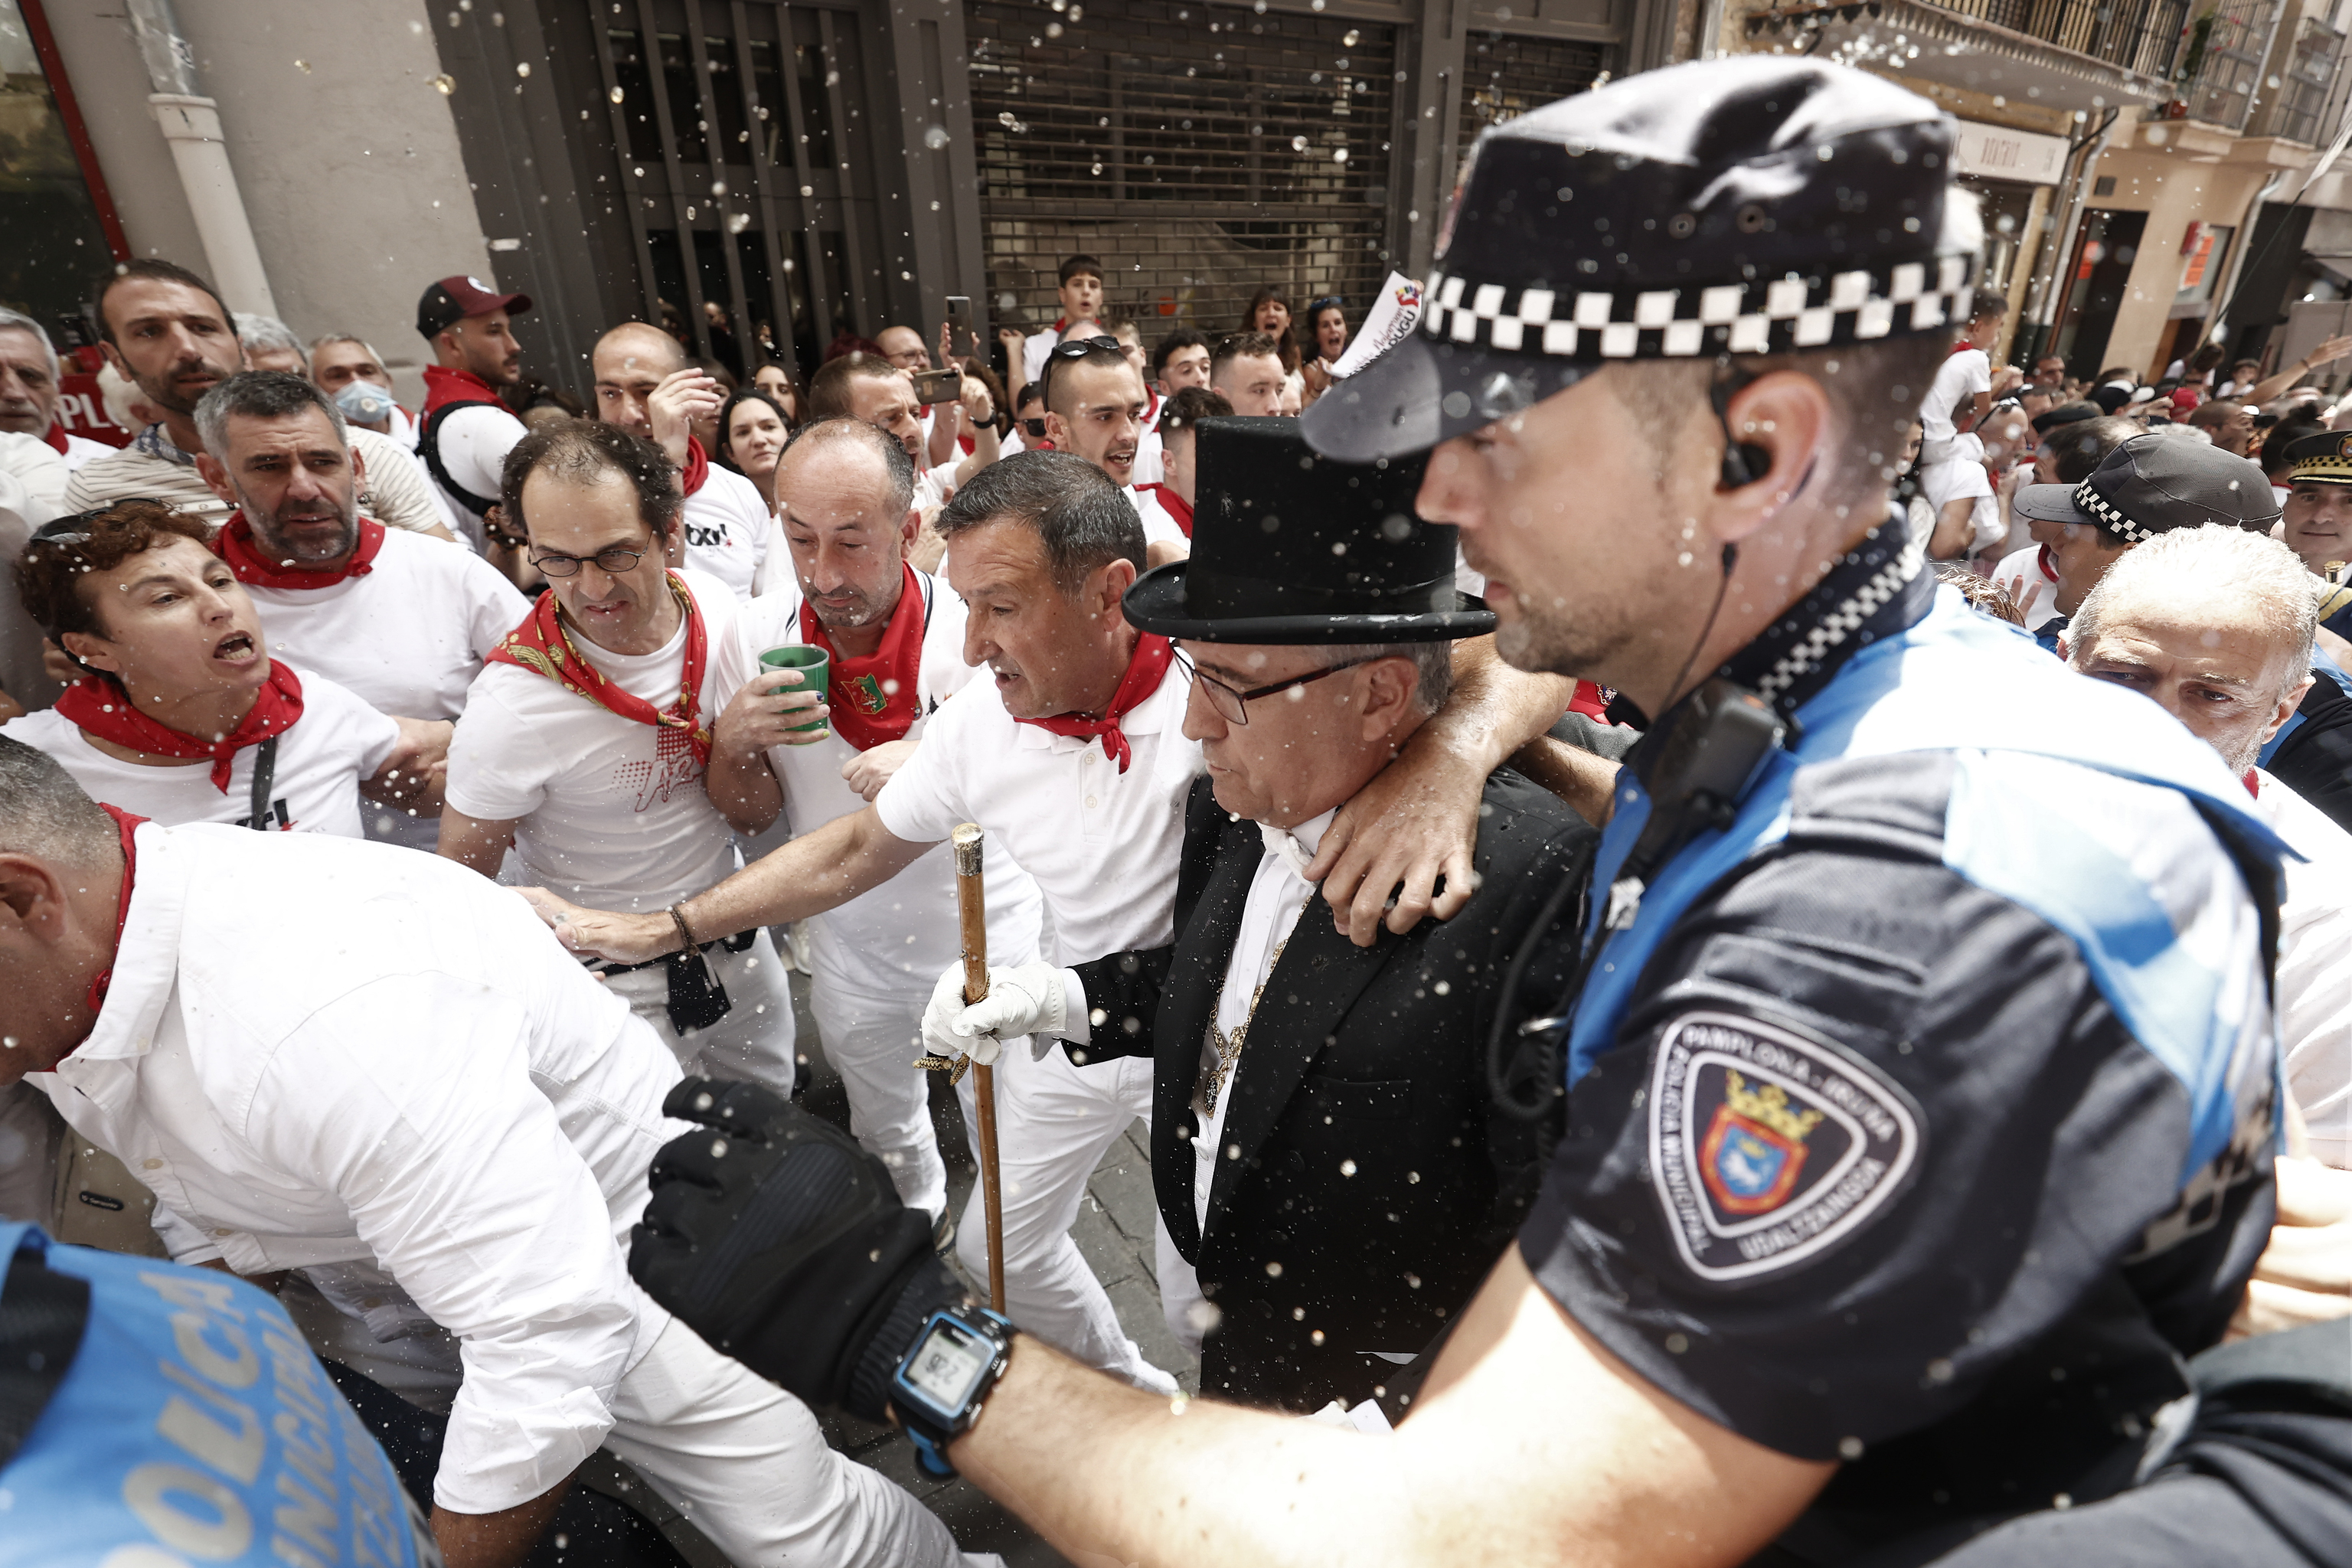 El alcalde de Pamplona Enrique Maya, durante los momentos de tensión vividos en la calle Curia.